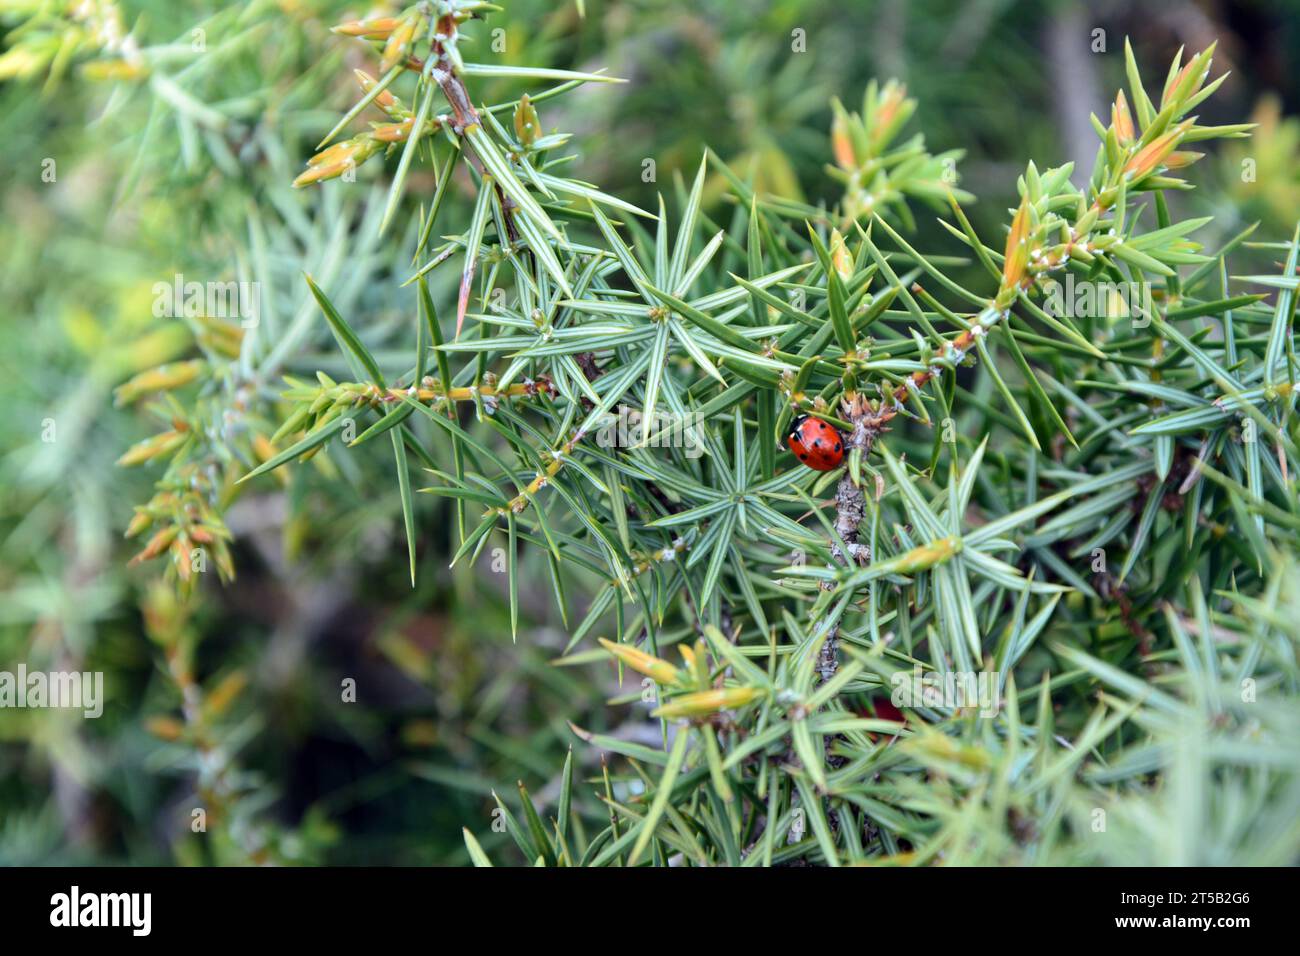 Un primo piano di un insetto femminile sui rami di Cade (Juniperus oxycedrus). Immagine orizzontale con messa a fuoco selettiva, sfondo sfocato e spazio di copia Foto Stock